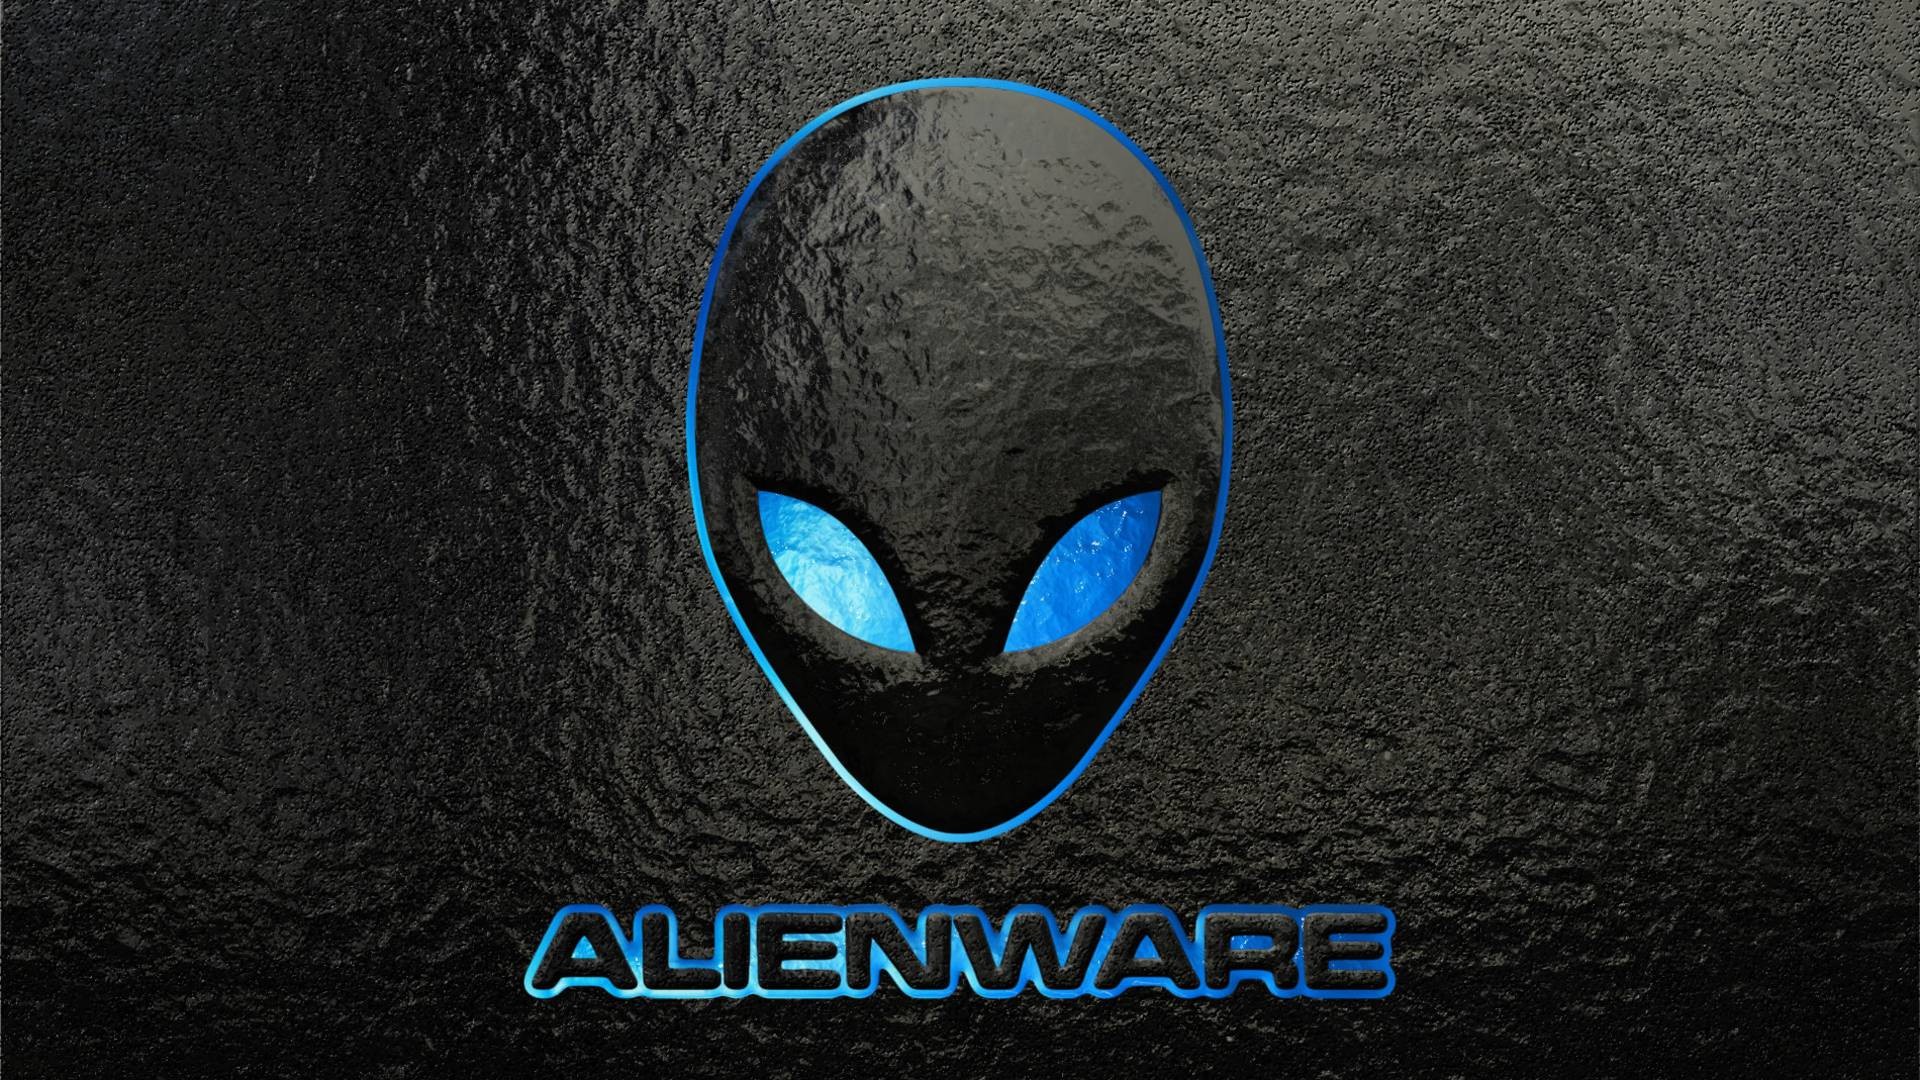 Alienware wallpaper hd pictures